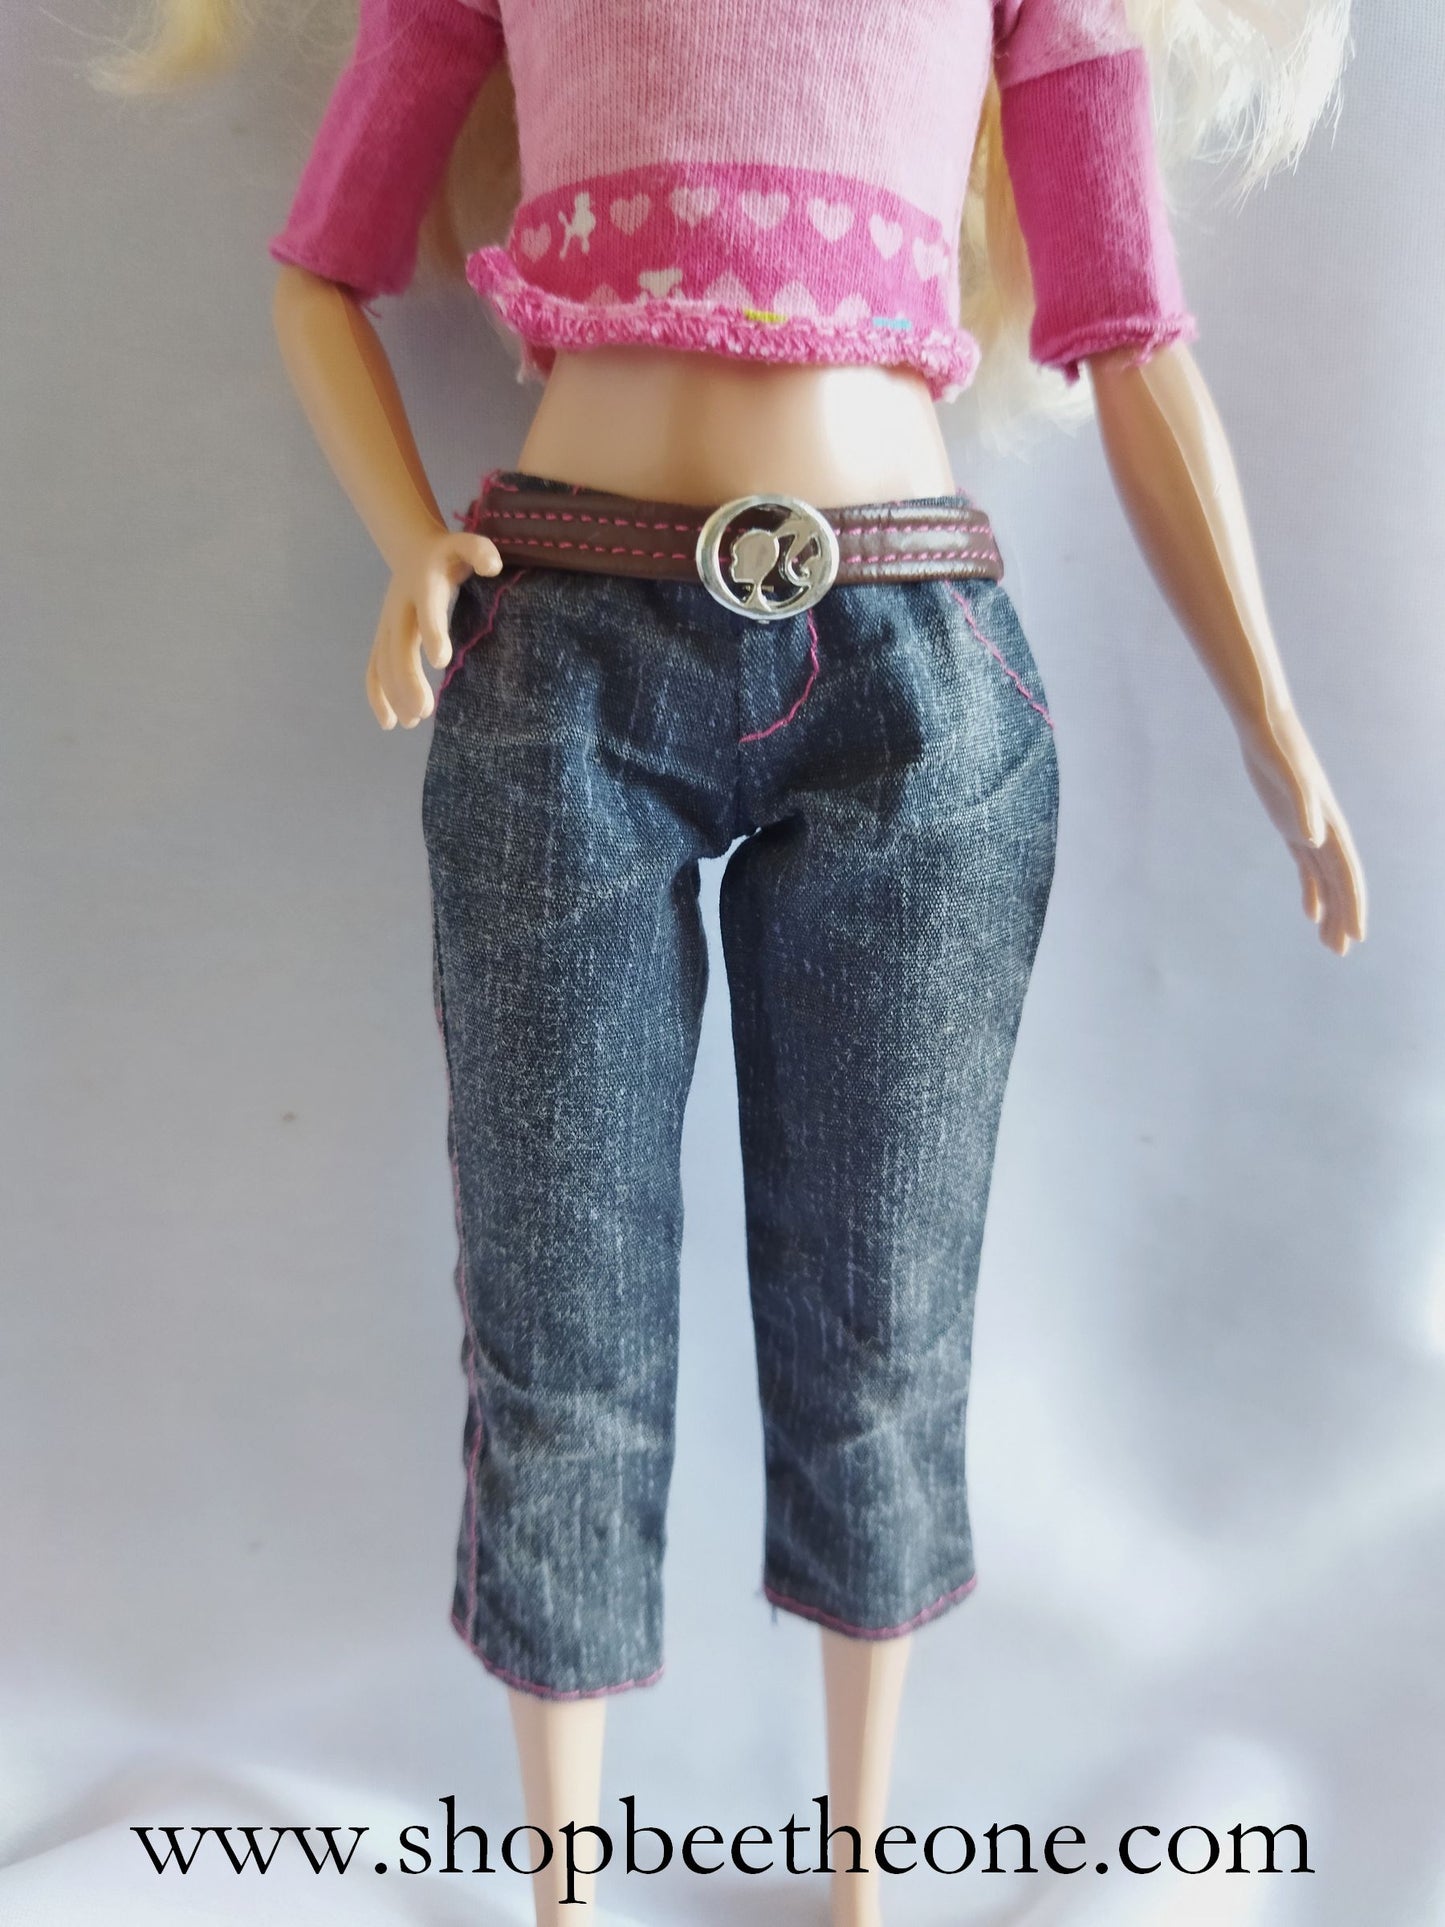 Barbie et Tawny Walking Together (En Balade) V6984 - Mattel 2011 - Vêtements